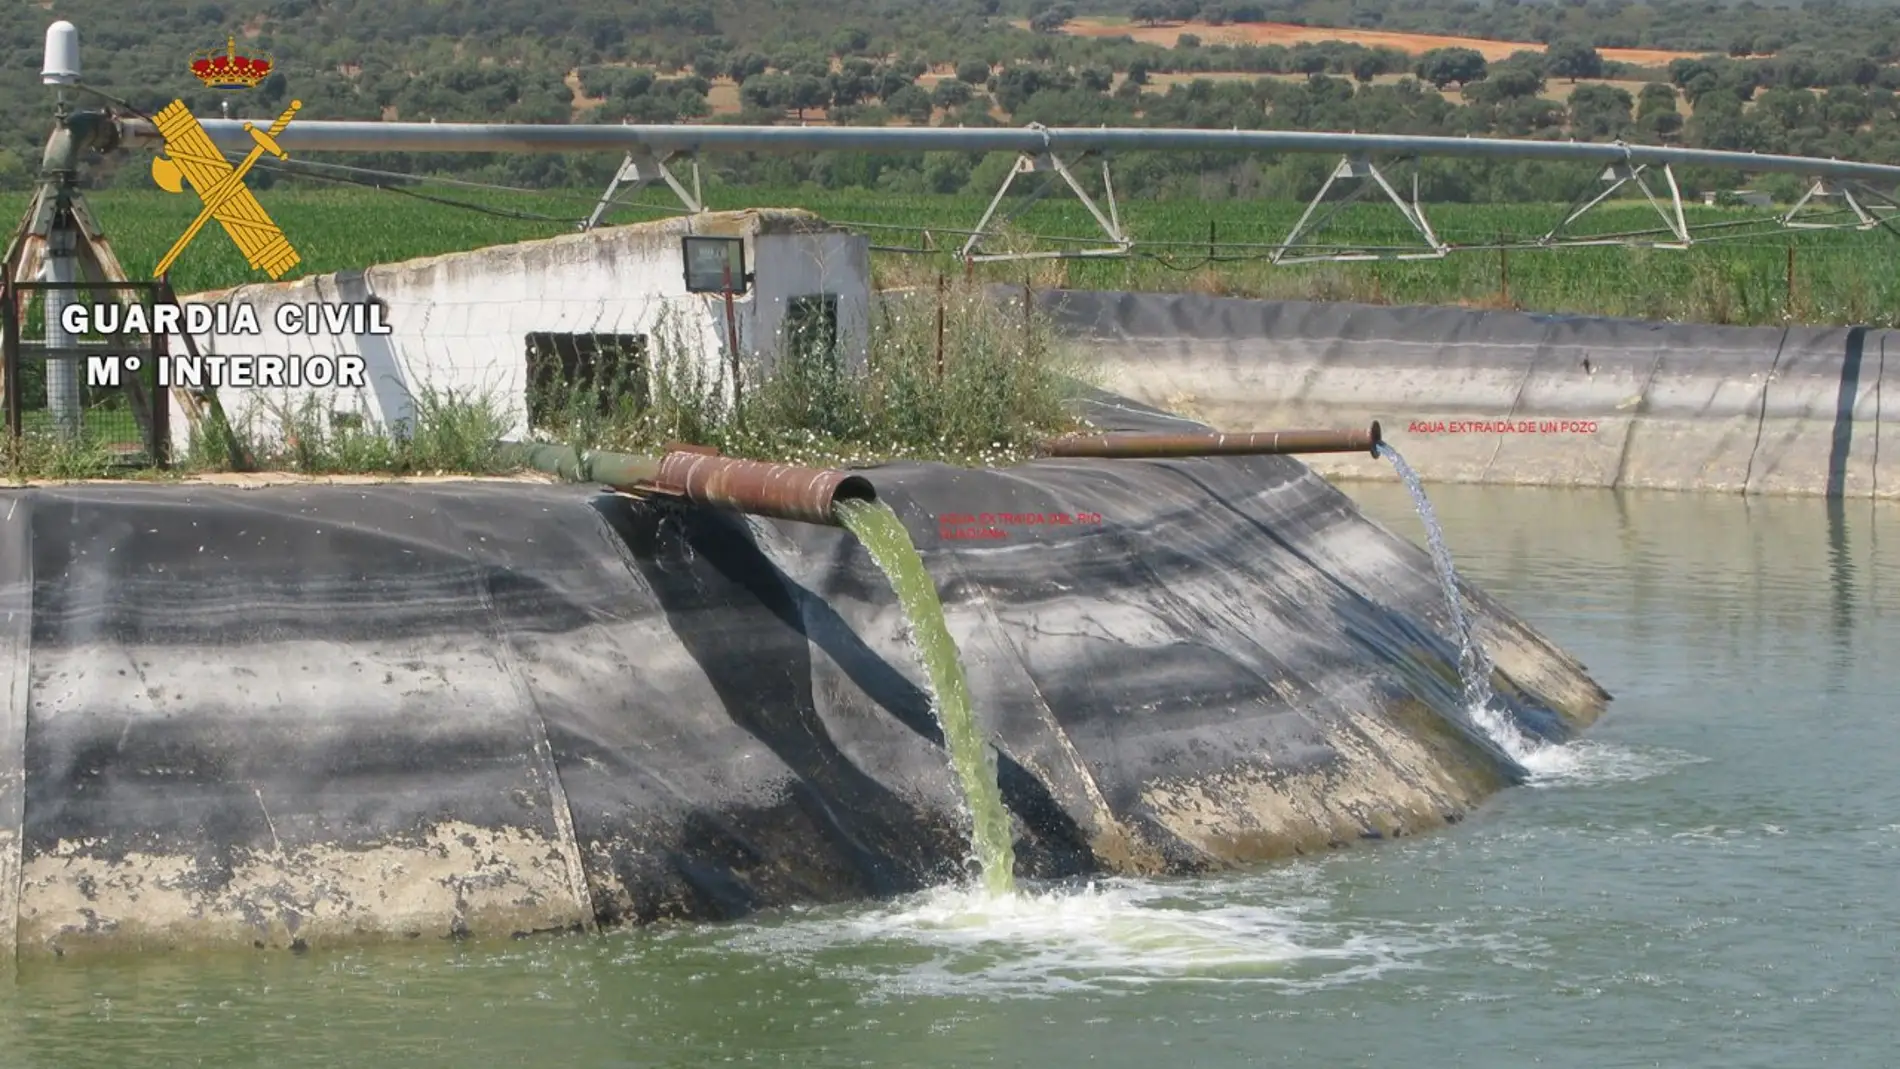 La extracción de agua se hacía en el río Guadiana